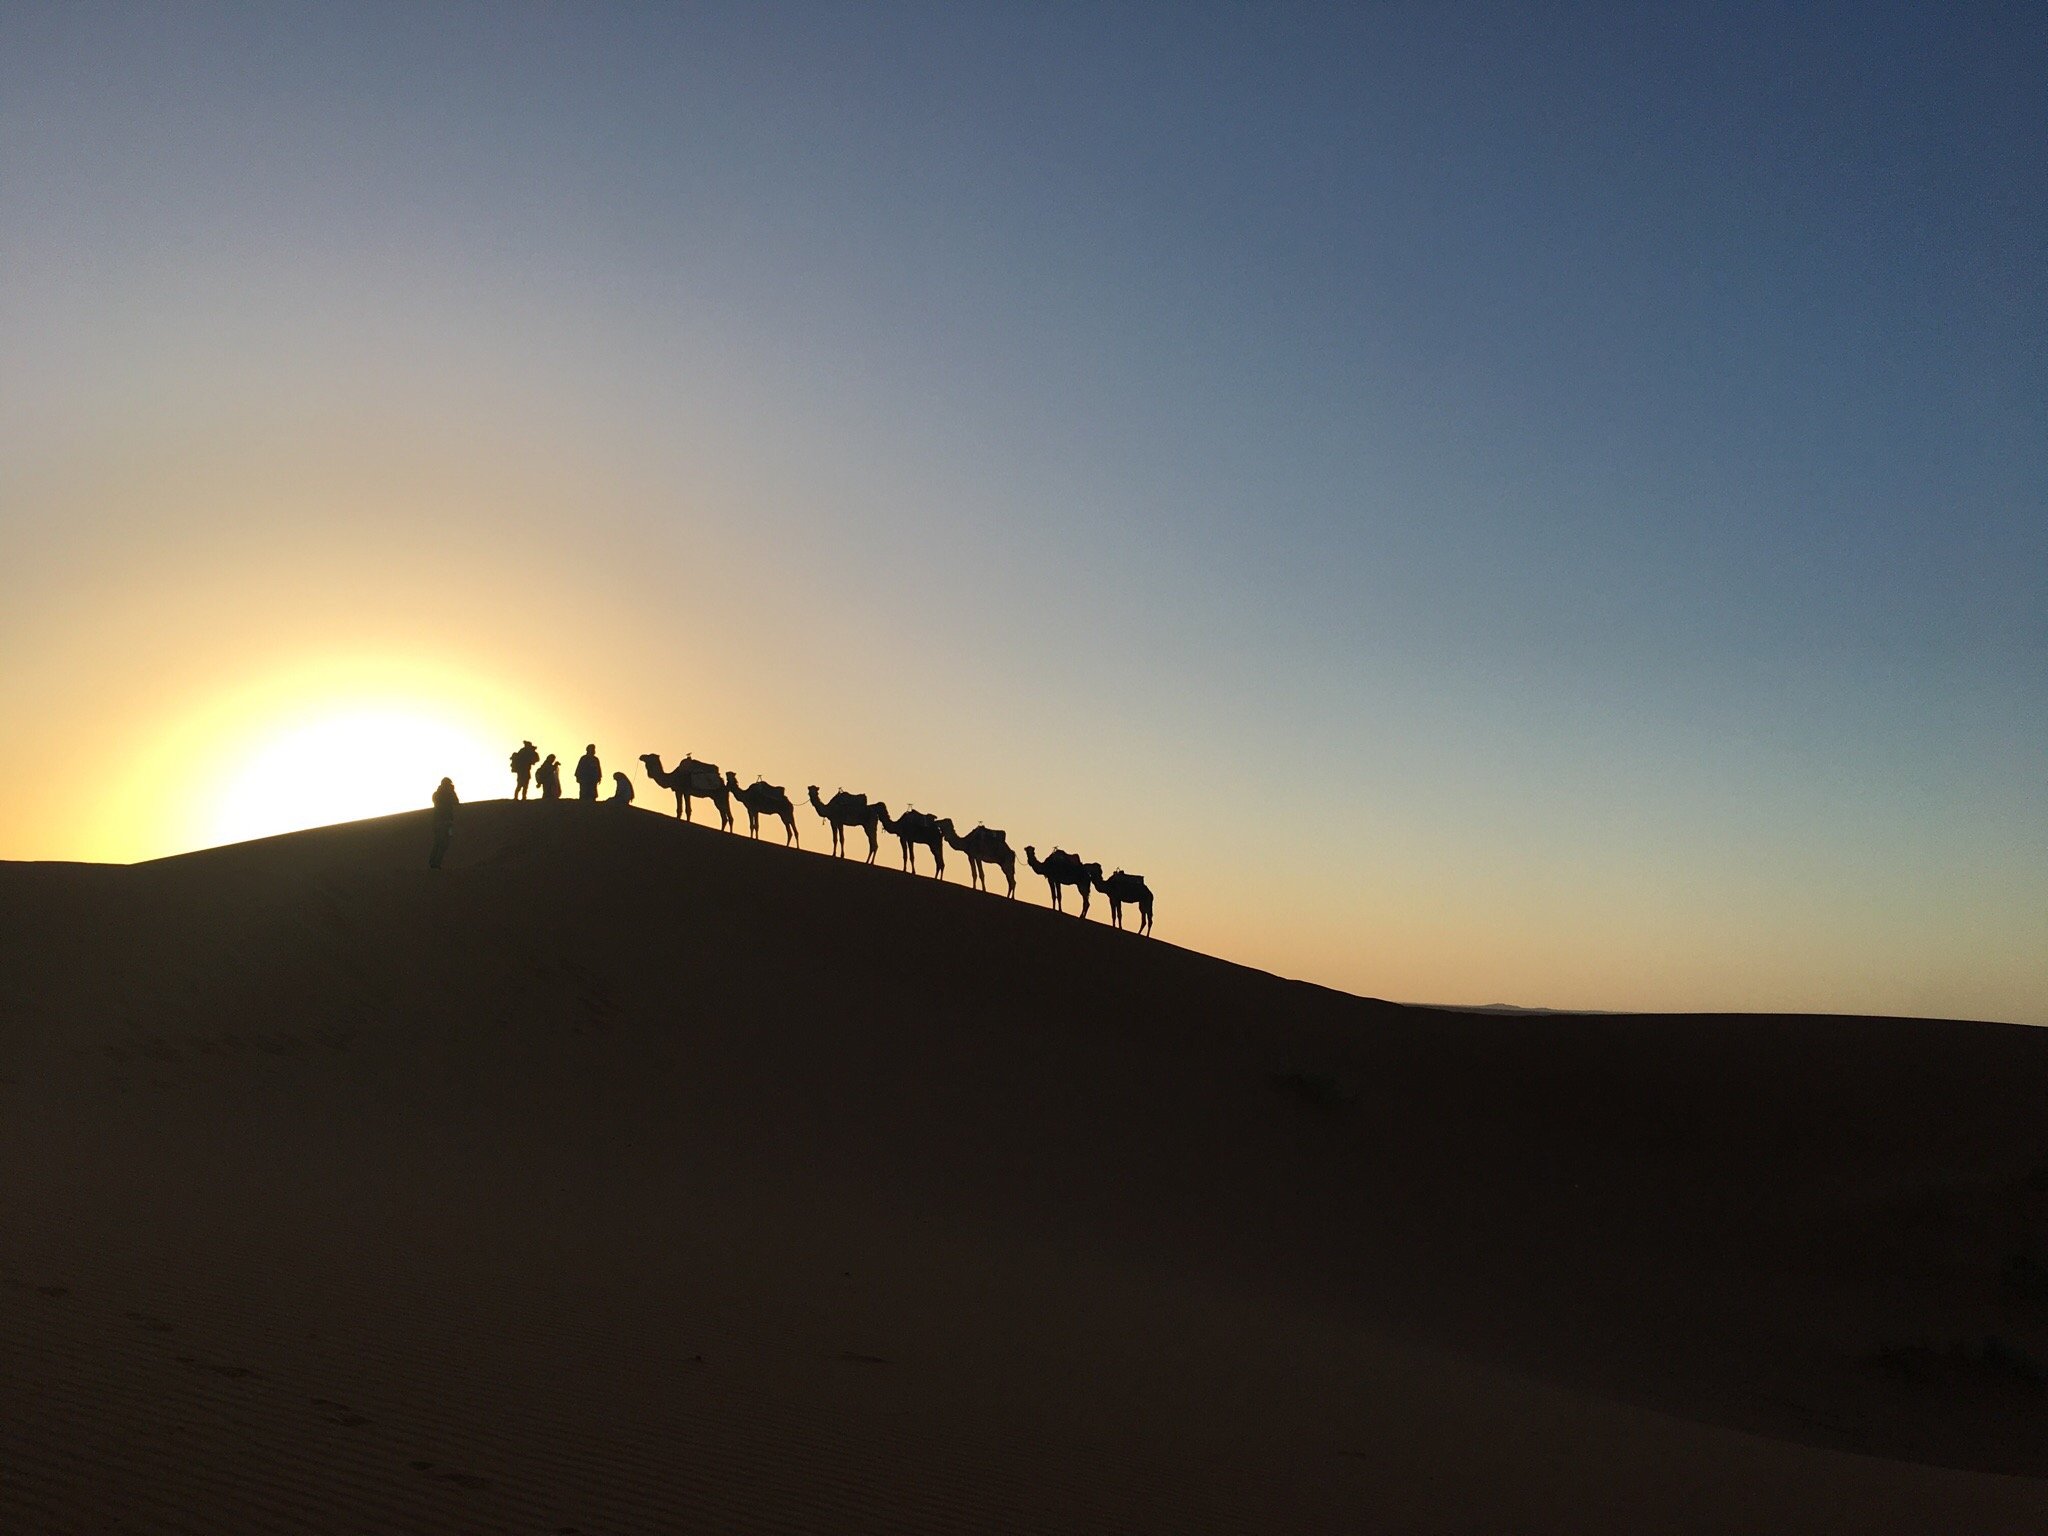 Ruta de 4 dias desde Marrakech al desierto